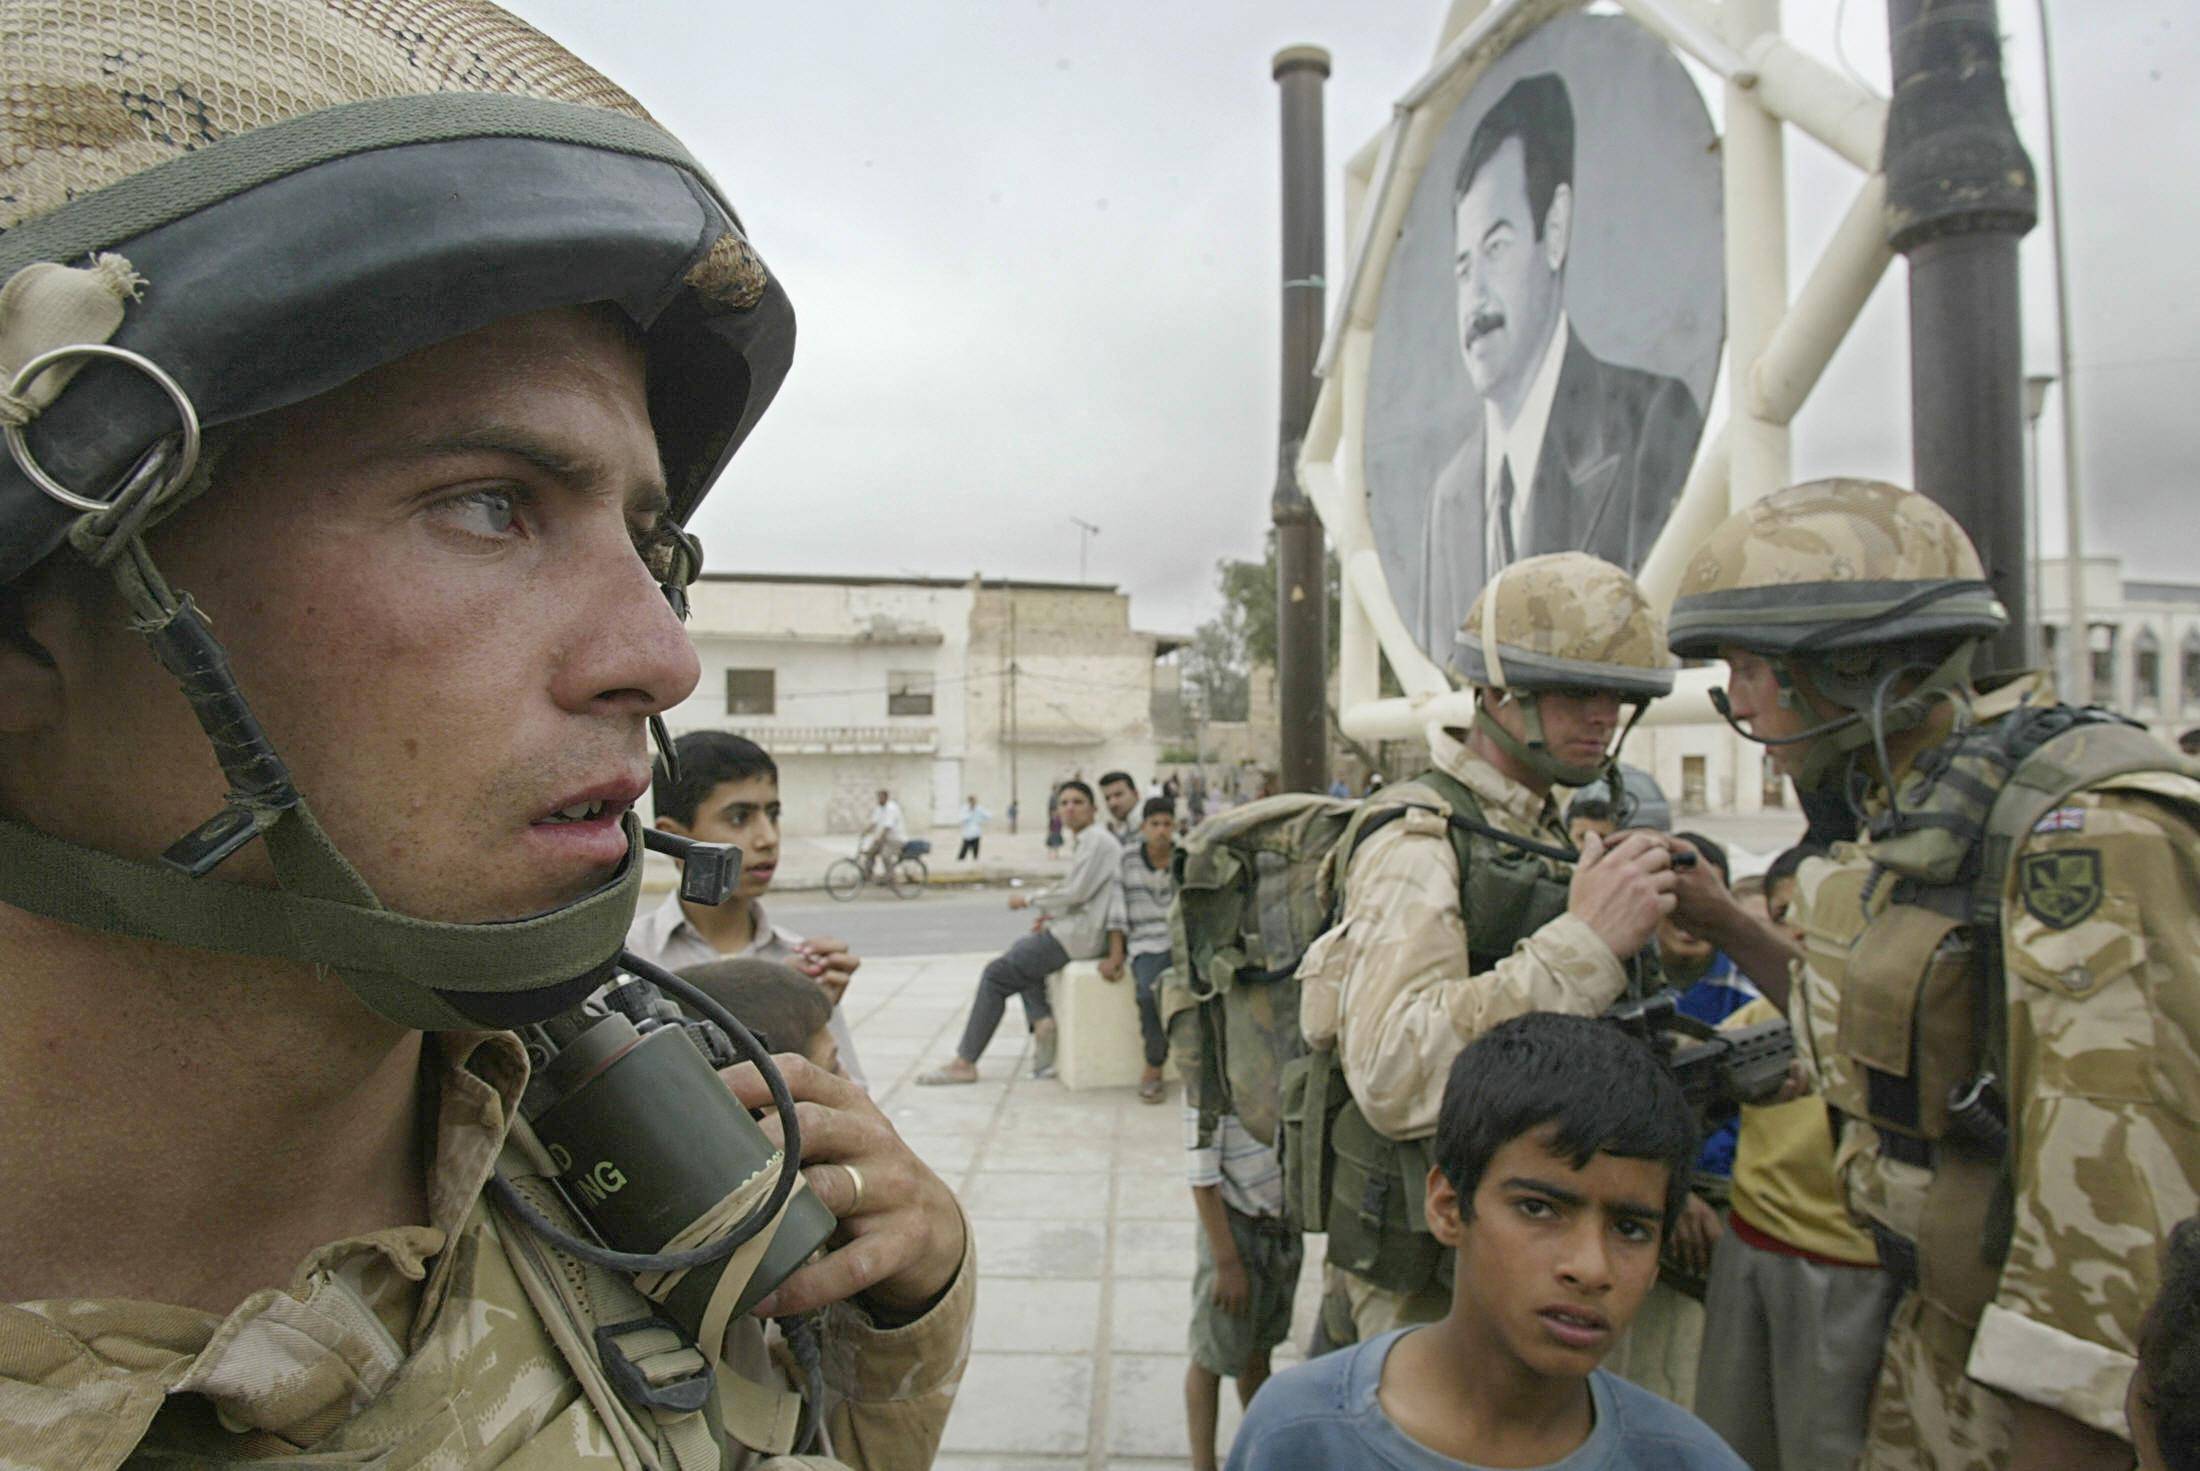 Los chicos de la guerra en Irak vivieron las mil y una noches negras de los cuentos. Hoy, las tropas invasoras extranjeras ya quedaron en el pasado. (ODD ANDERSEN / AFP)